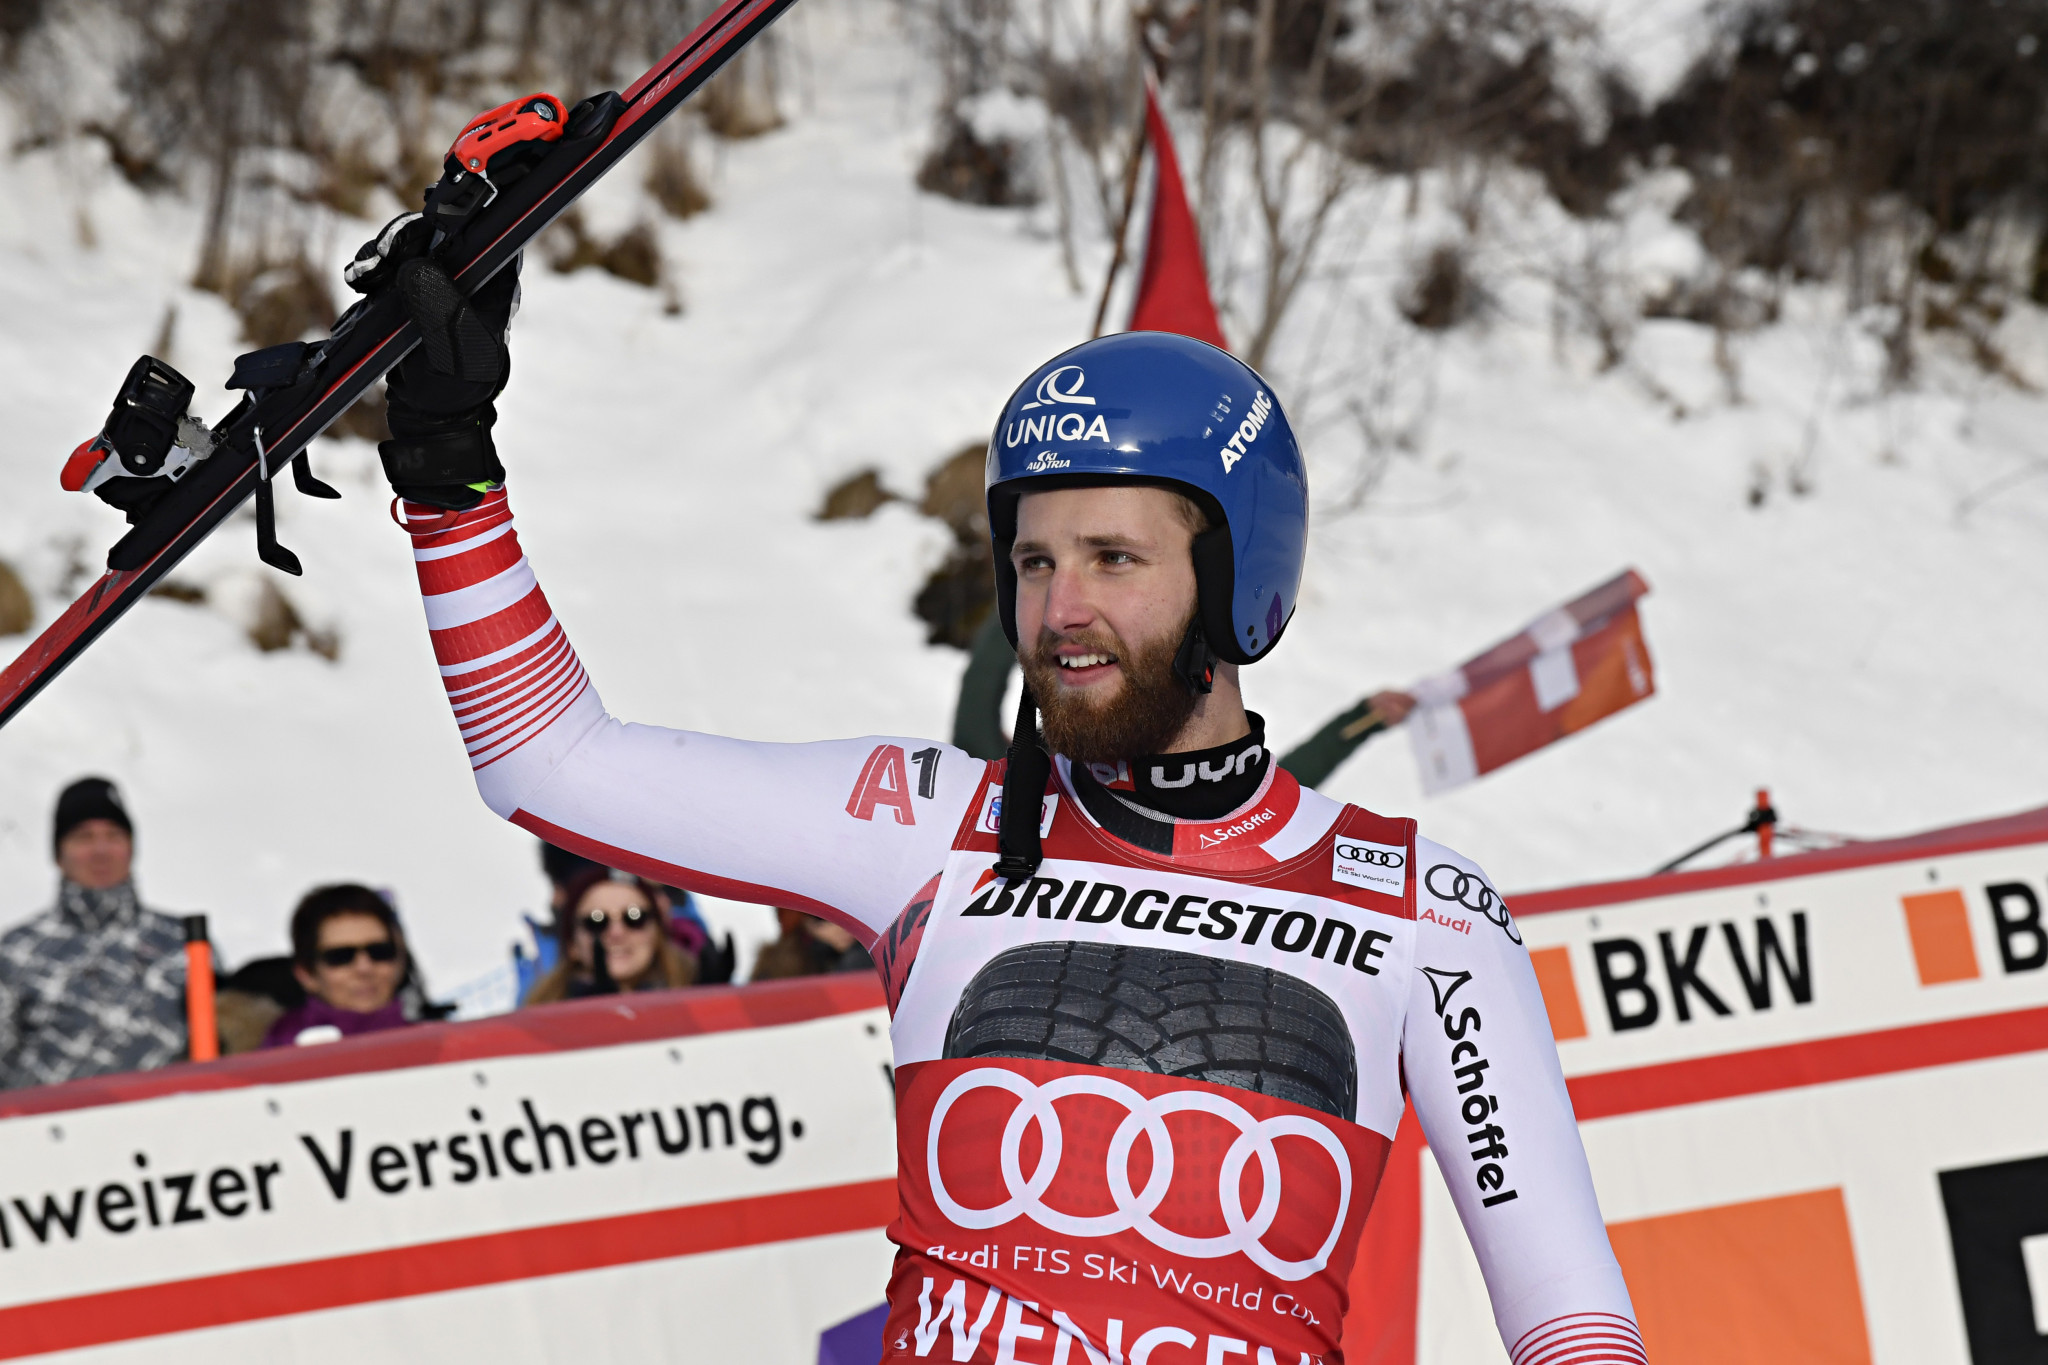 Schwarz and Siebenhofer claim first victories at FIS Alpine Skiing World Cup